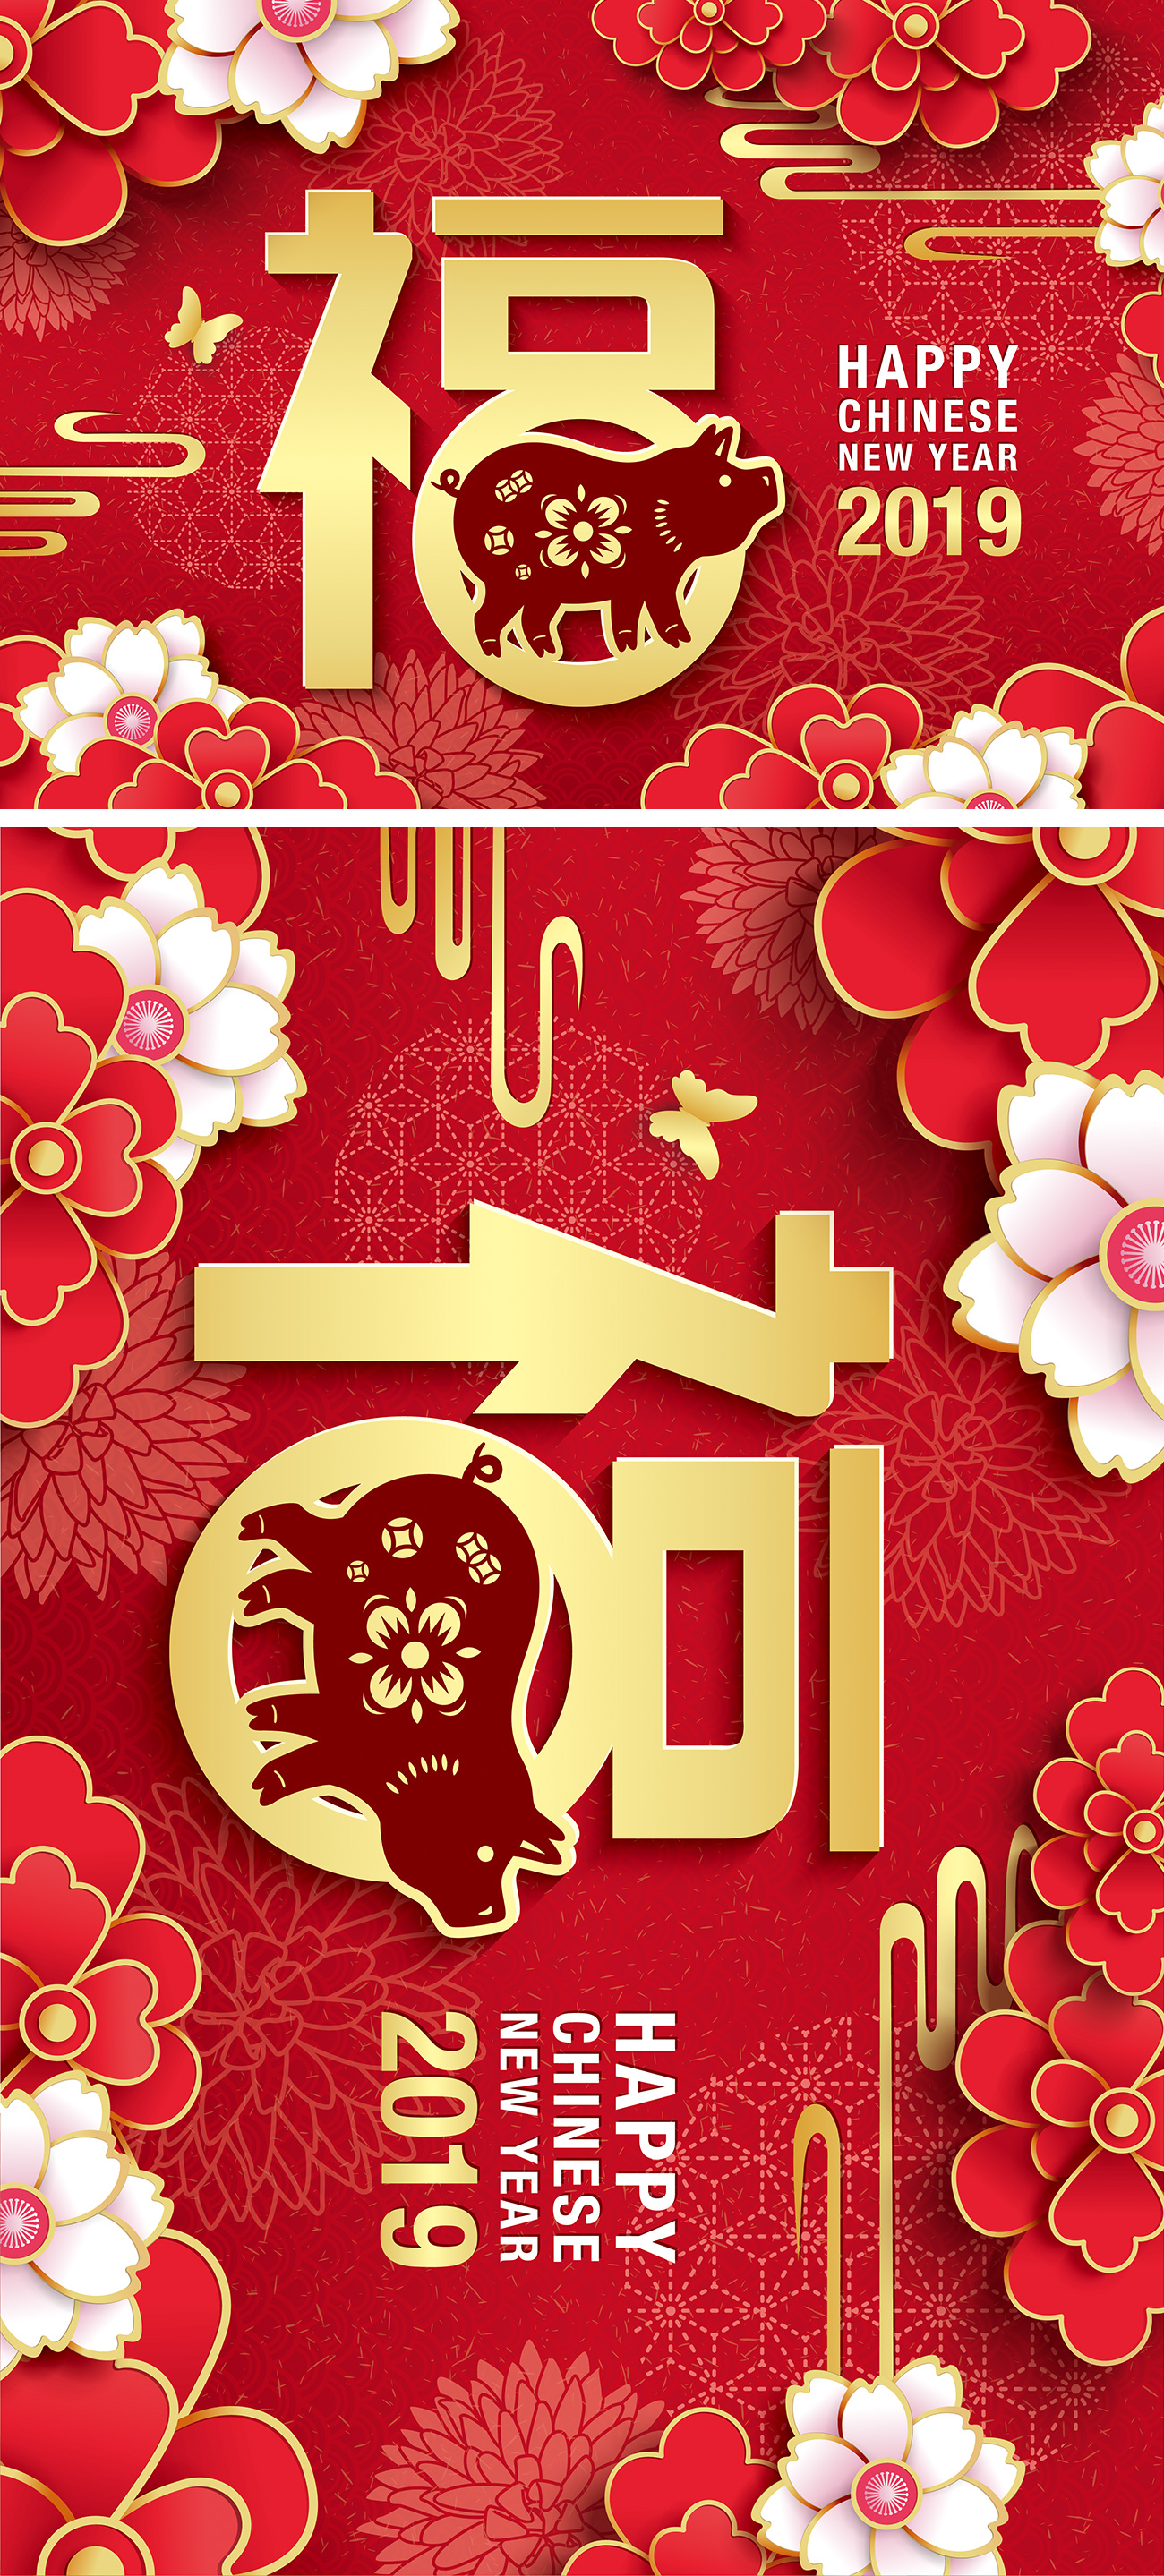 2019猪年中国传统新年十二生肖纸艺贺卡矢量素材